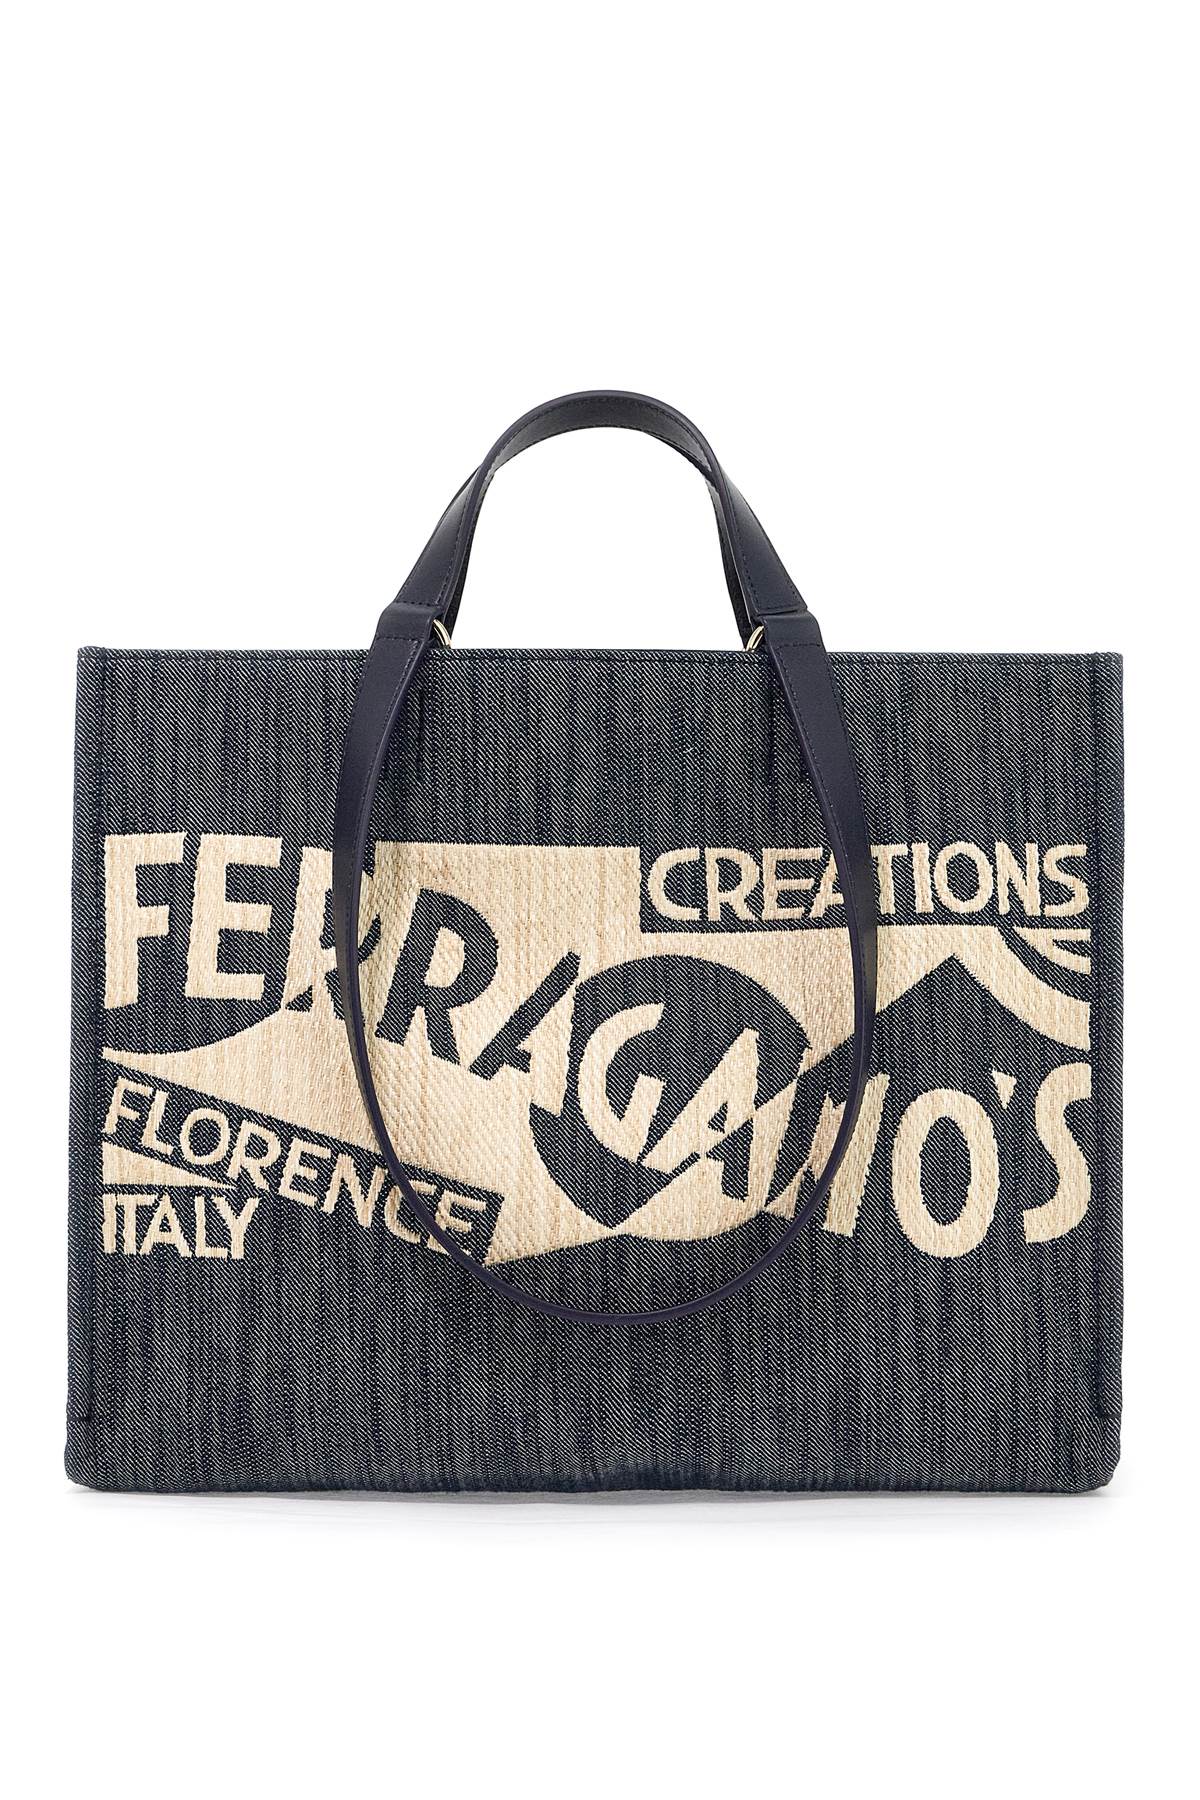 Ferragamo Logo Printed Tote Bag (m) In Black